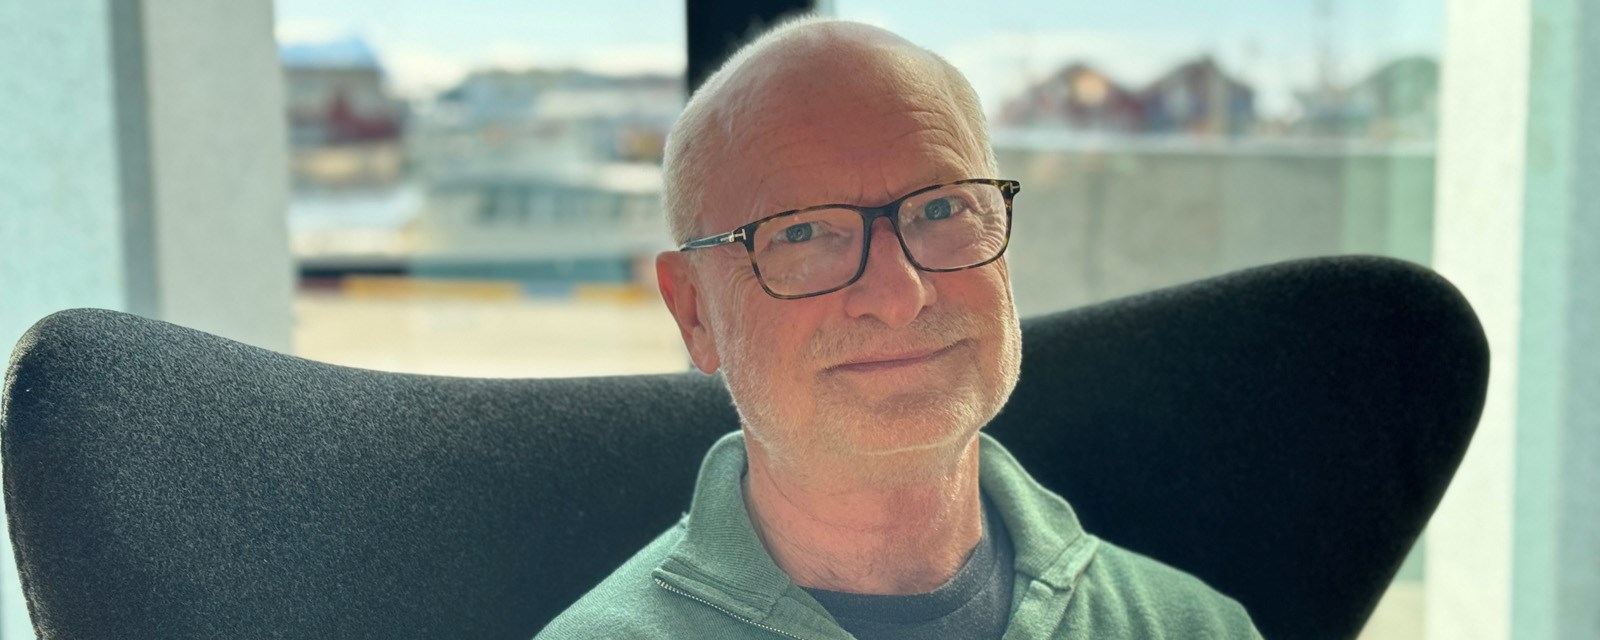 Tom Solli ble pensjonist høsten 2023 og hadde fortsatt mye å gi. Da meldte han seg som frivillig i Bodø Røde Kors som besøksvenn for dem som føler seg ensomme og ønsker noen å prate med.